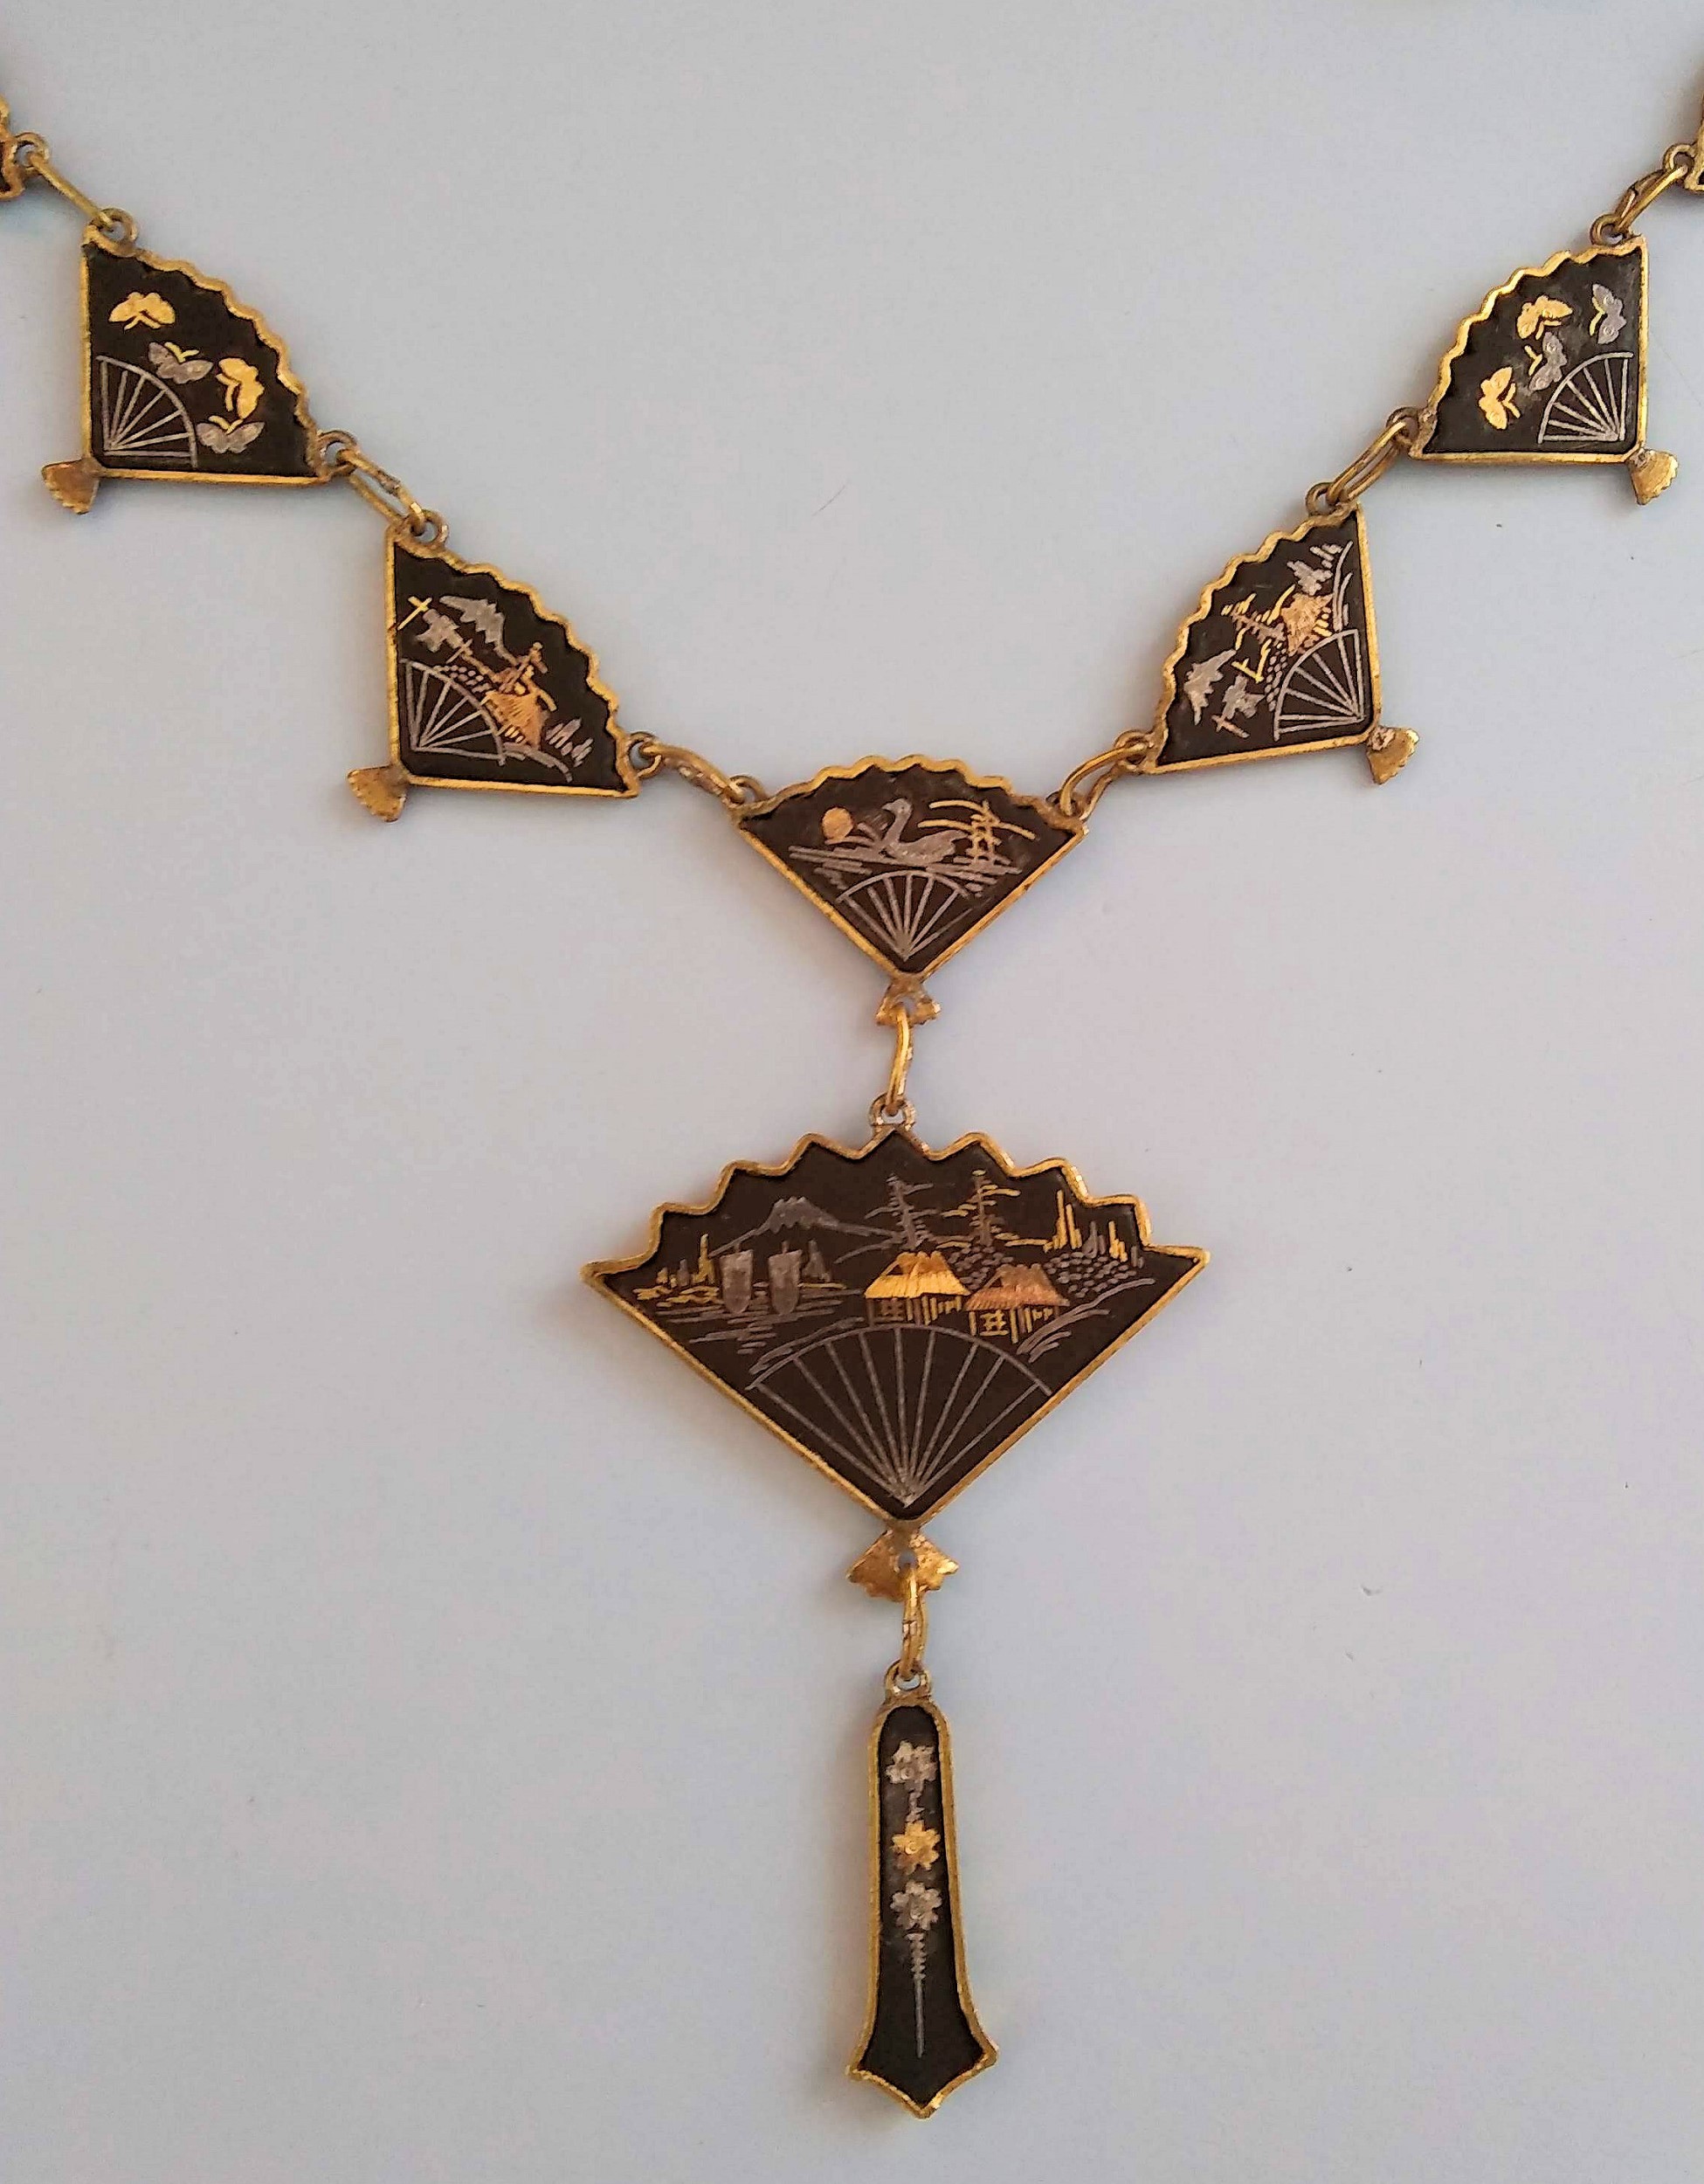 Damascene Kyoto Pendant Necklace 1950s Pendant 24K Gold Inlay Japanese Damascene Pendant